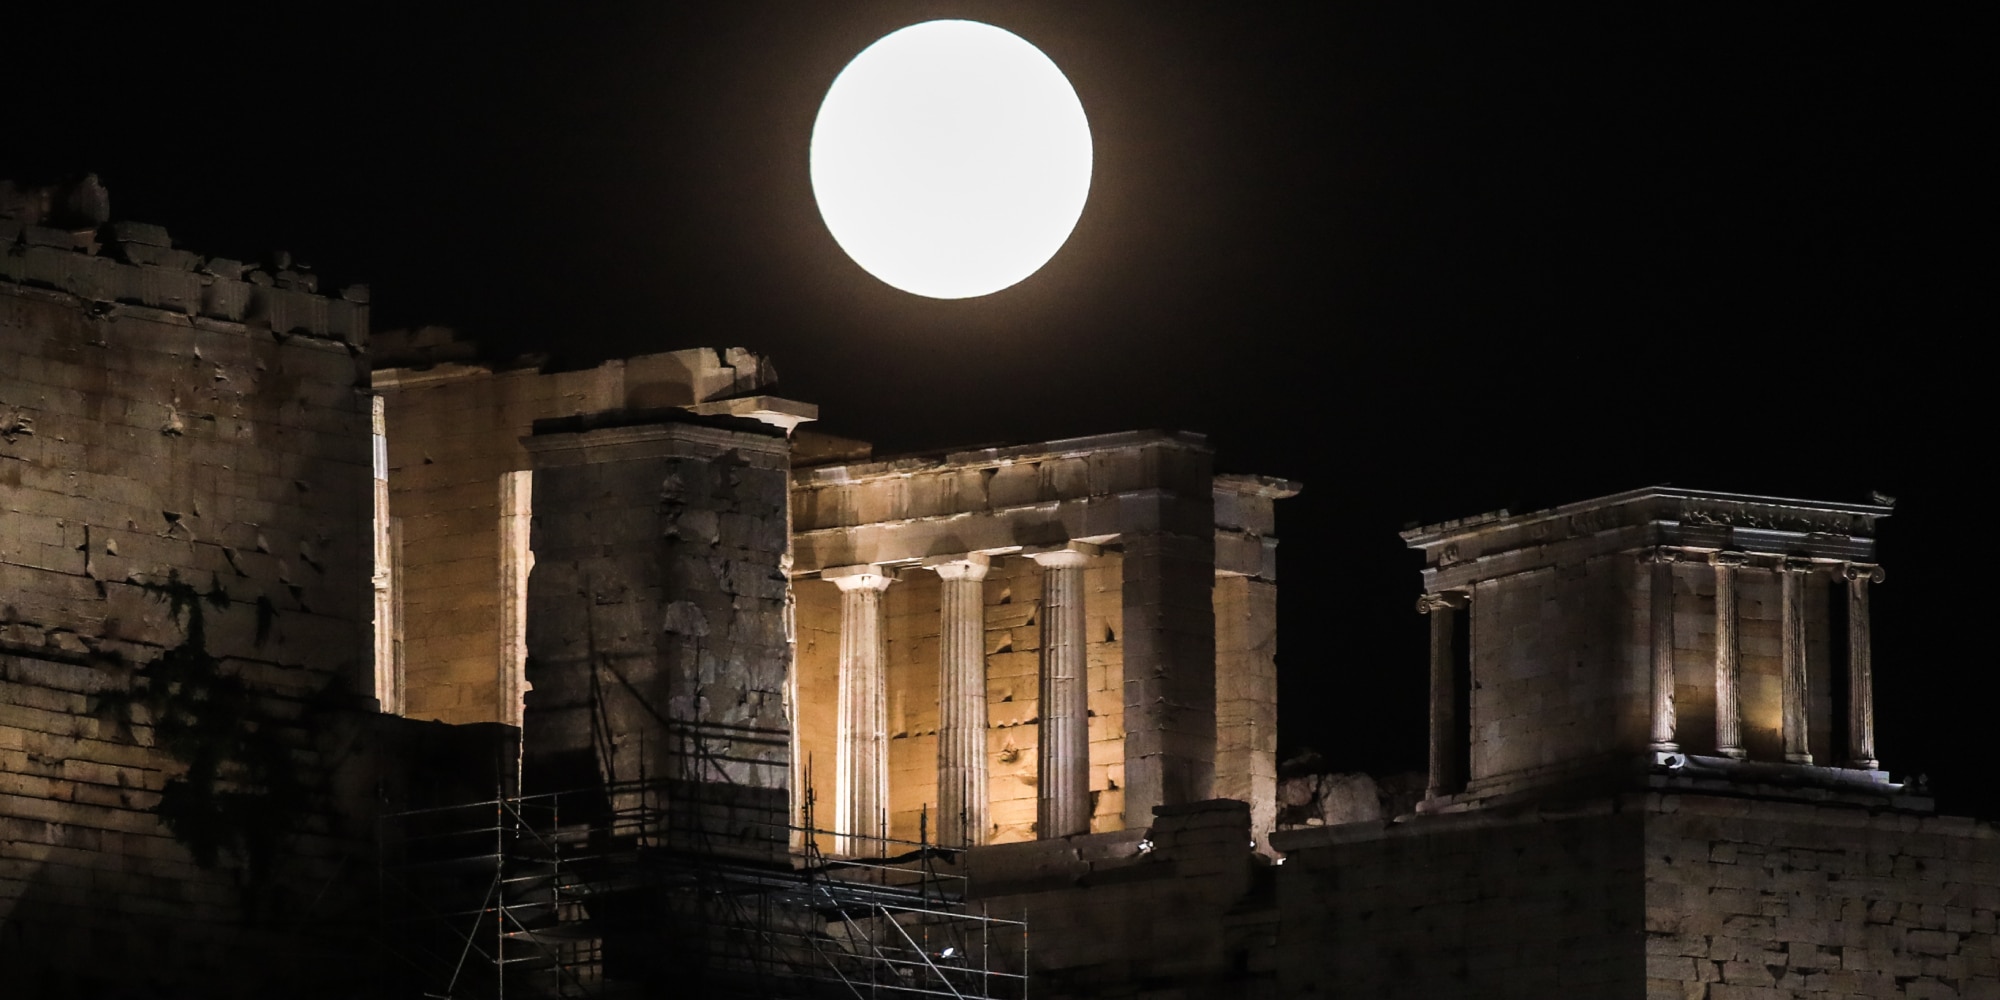 Πέντε συγκλονιστικά κλικ από την υπερπανσέληνο του Αυγούστου: Από την Ακρόπολη μέχρι το Σούνιο, μάγεψε το «φεγγάρι του οξύρρυγχου»